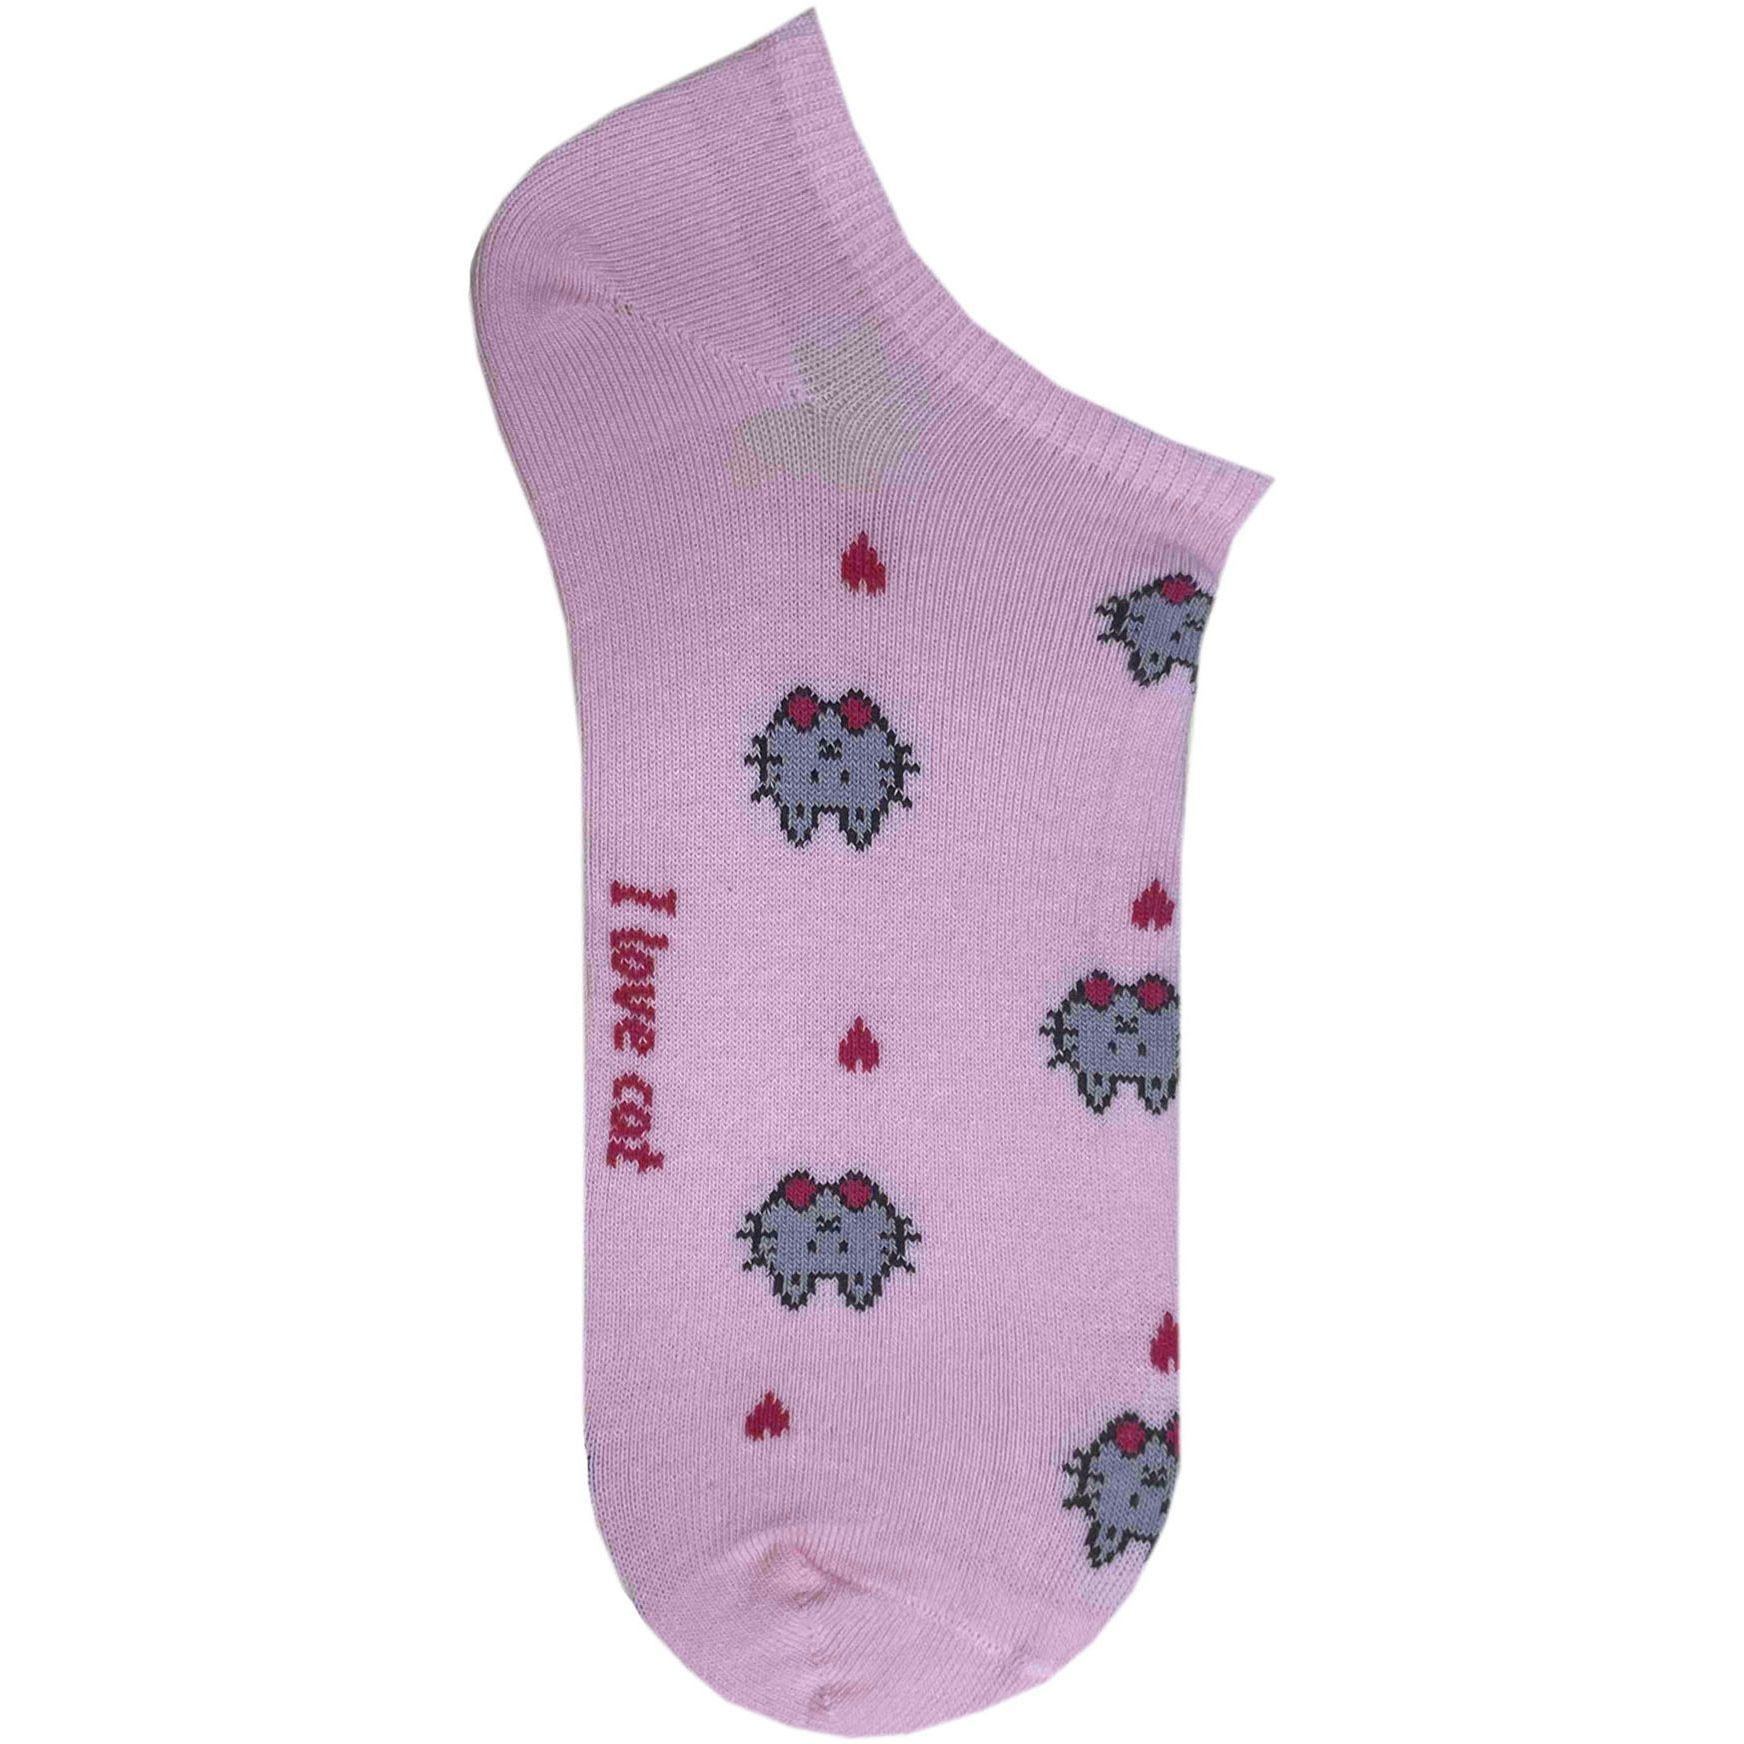 Носки женские Premier Socks 36-40 1 пара розовые с принтом Коты (4820163318899)фото1